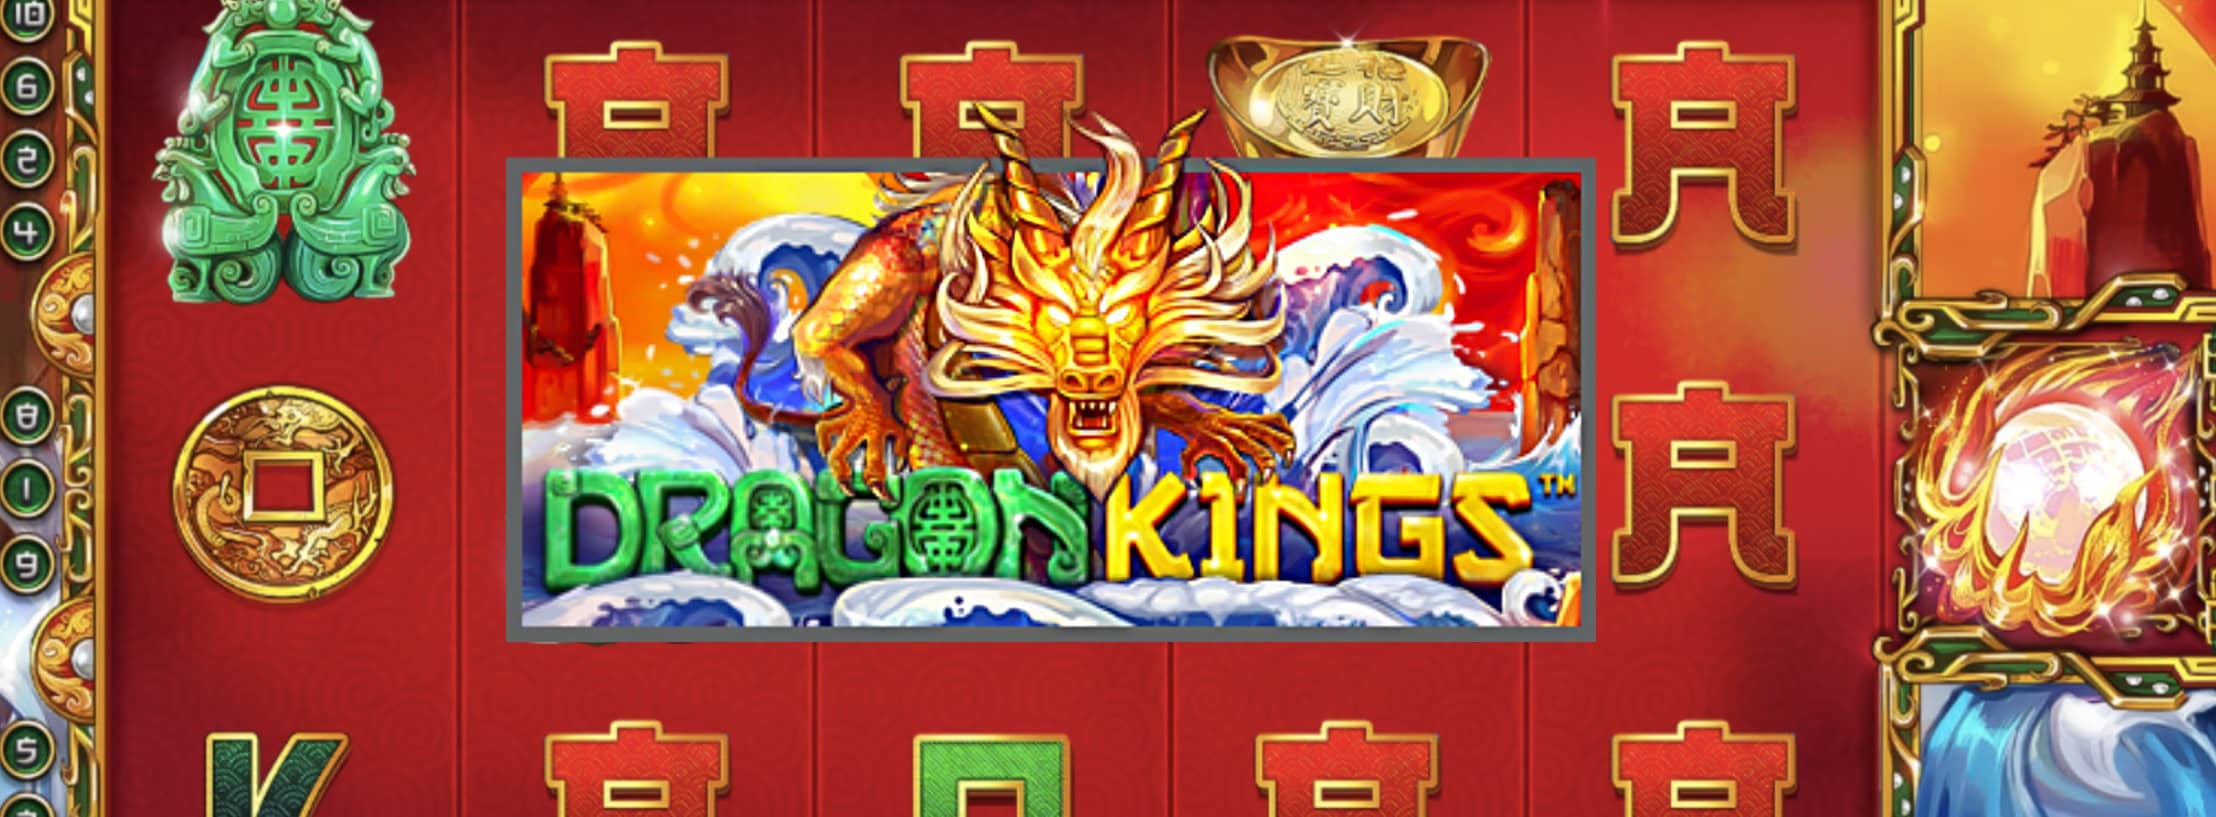 Dragon Kings 슬롯 리뷰: 최대 34,000유로를 달성할 수 있을까요?